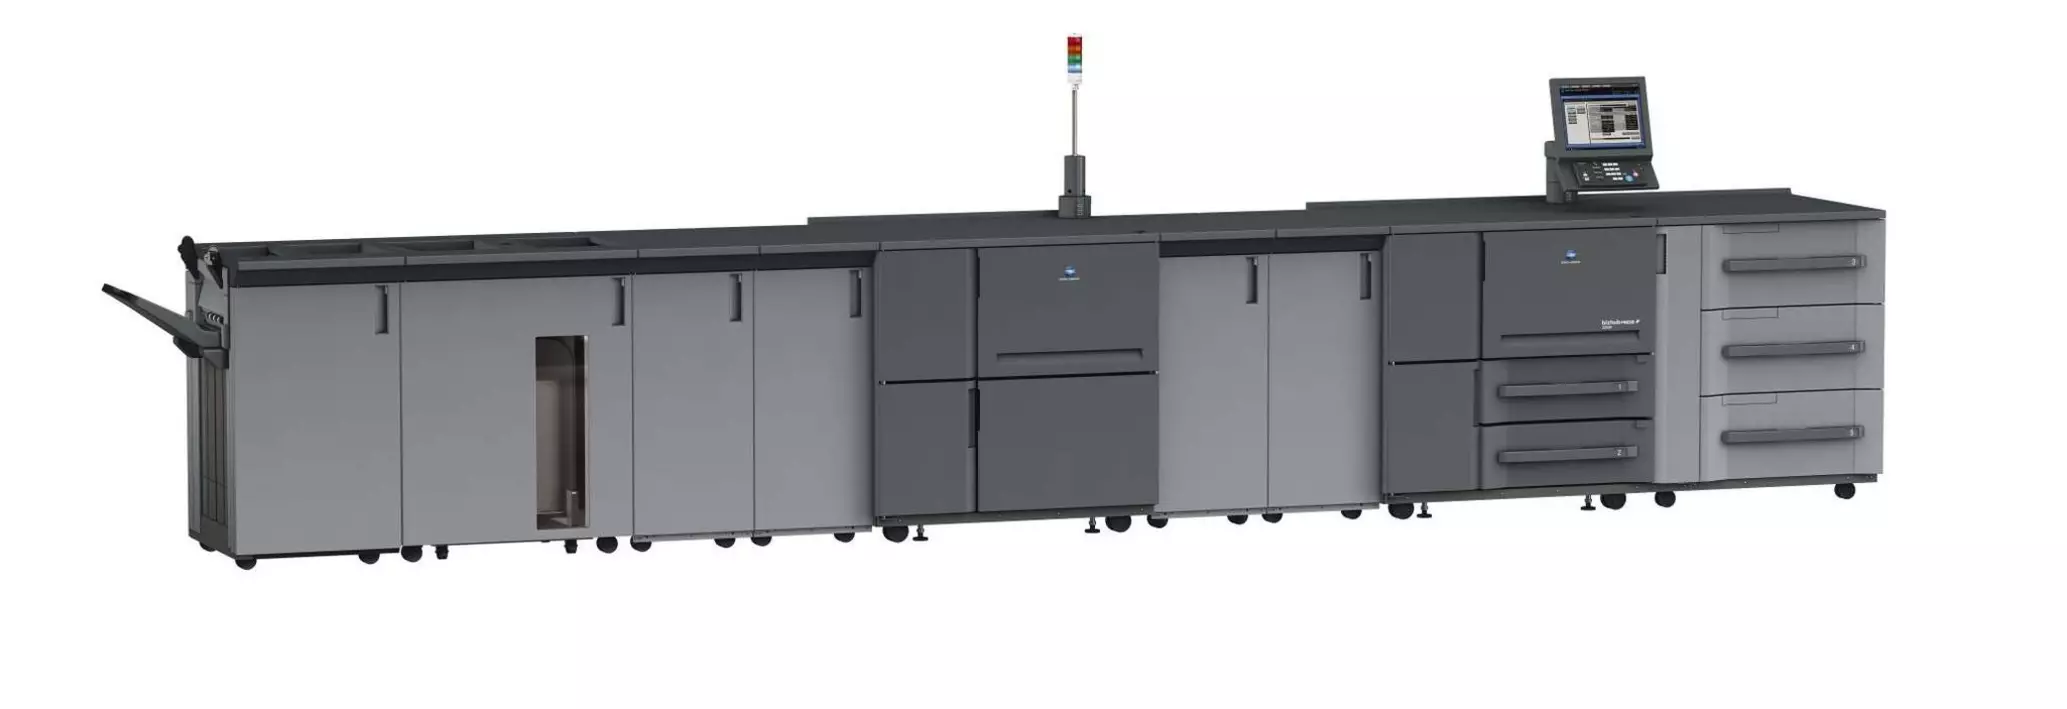 Imprimantă profesională Konica Minolta bizhub press 2250P